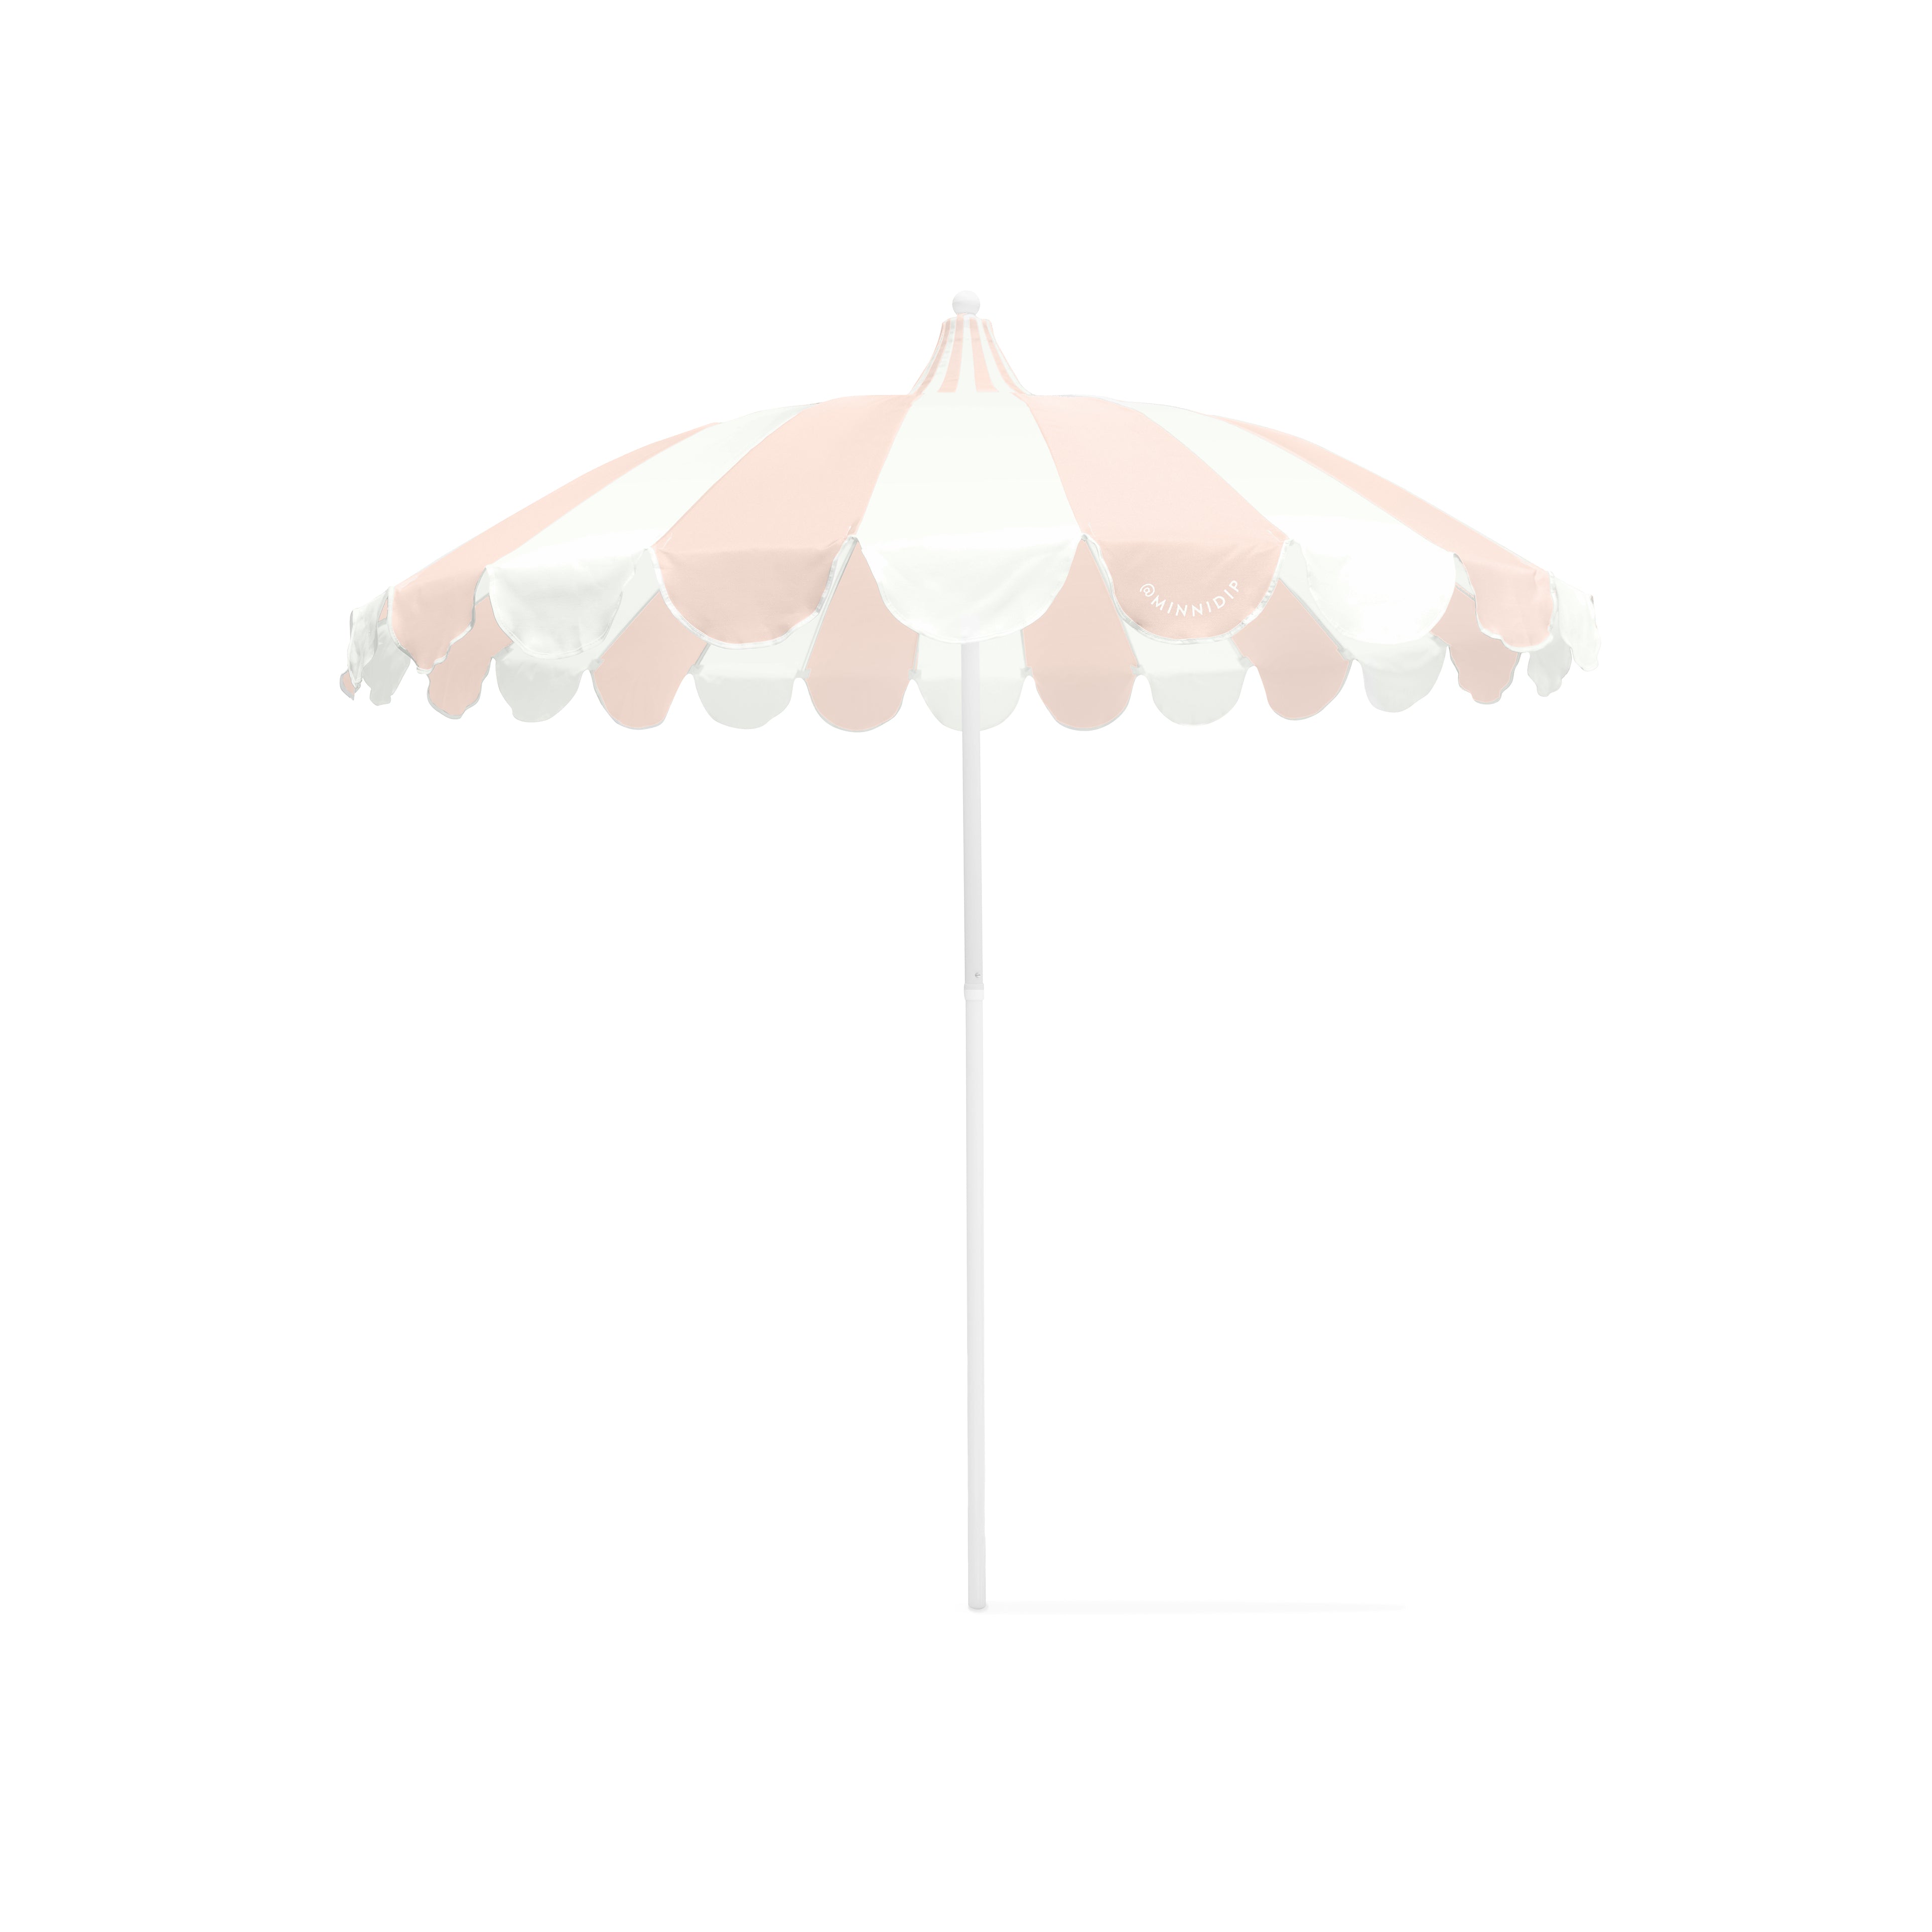 the SCALLOPED Market Umbrella in Blush